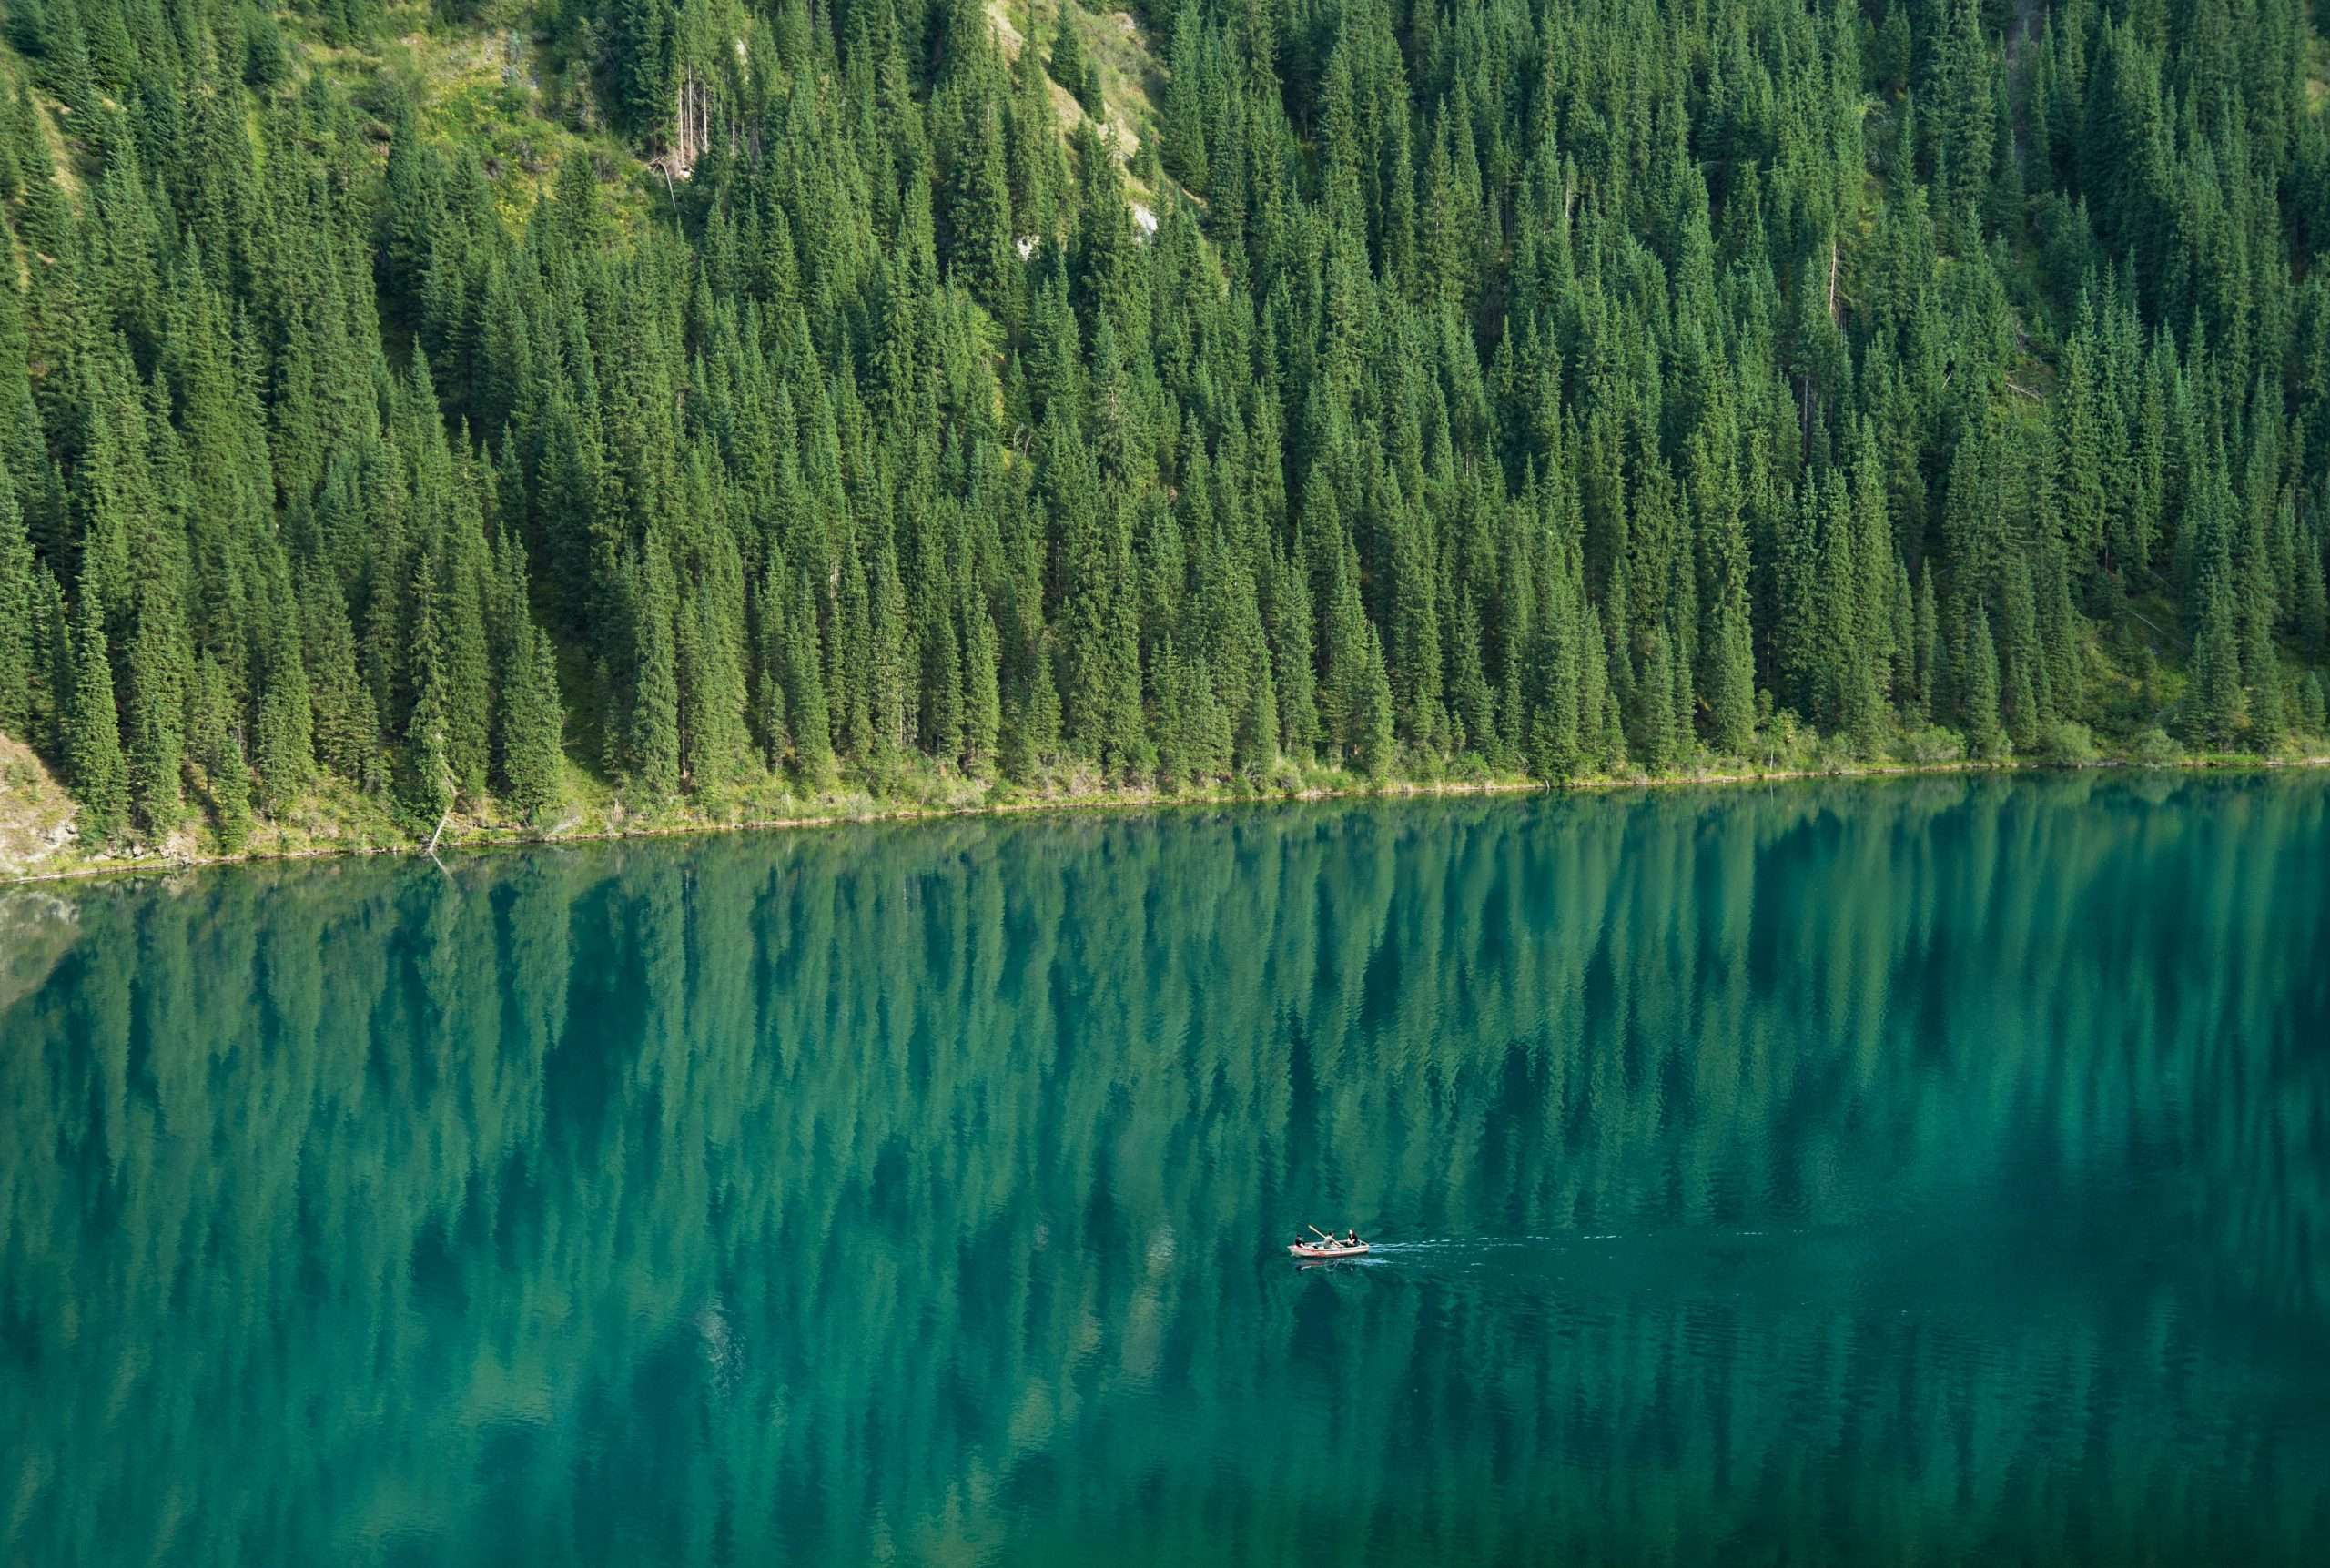 Kolsai Lake, Kazakhstan